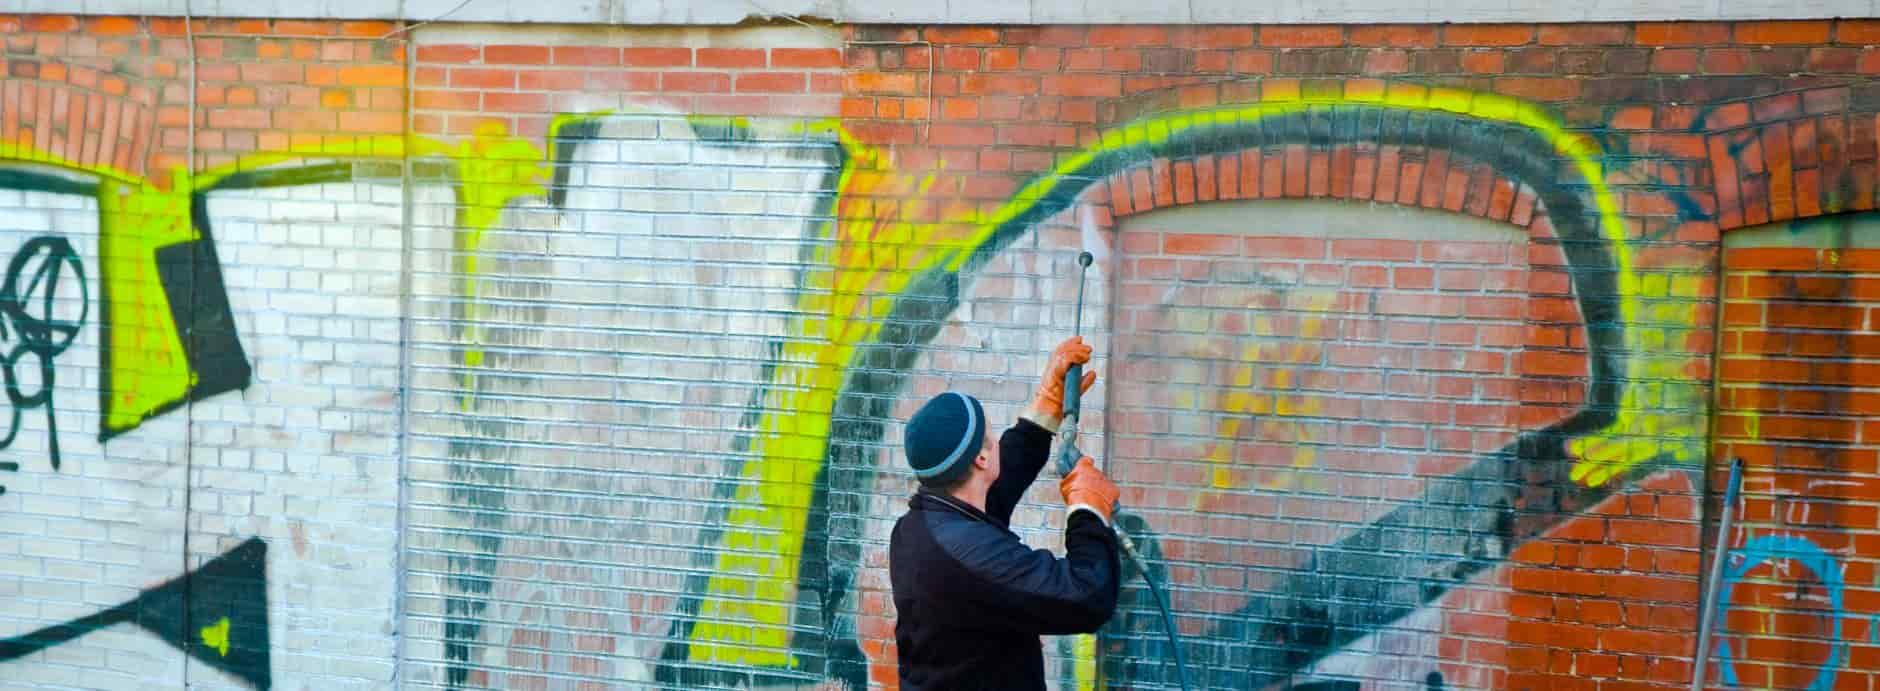 Graffiti Removal in Wheatley Hill